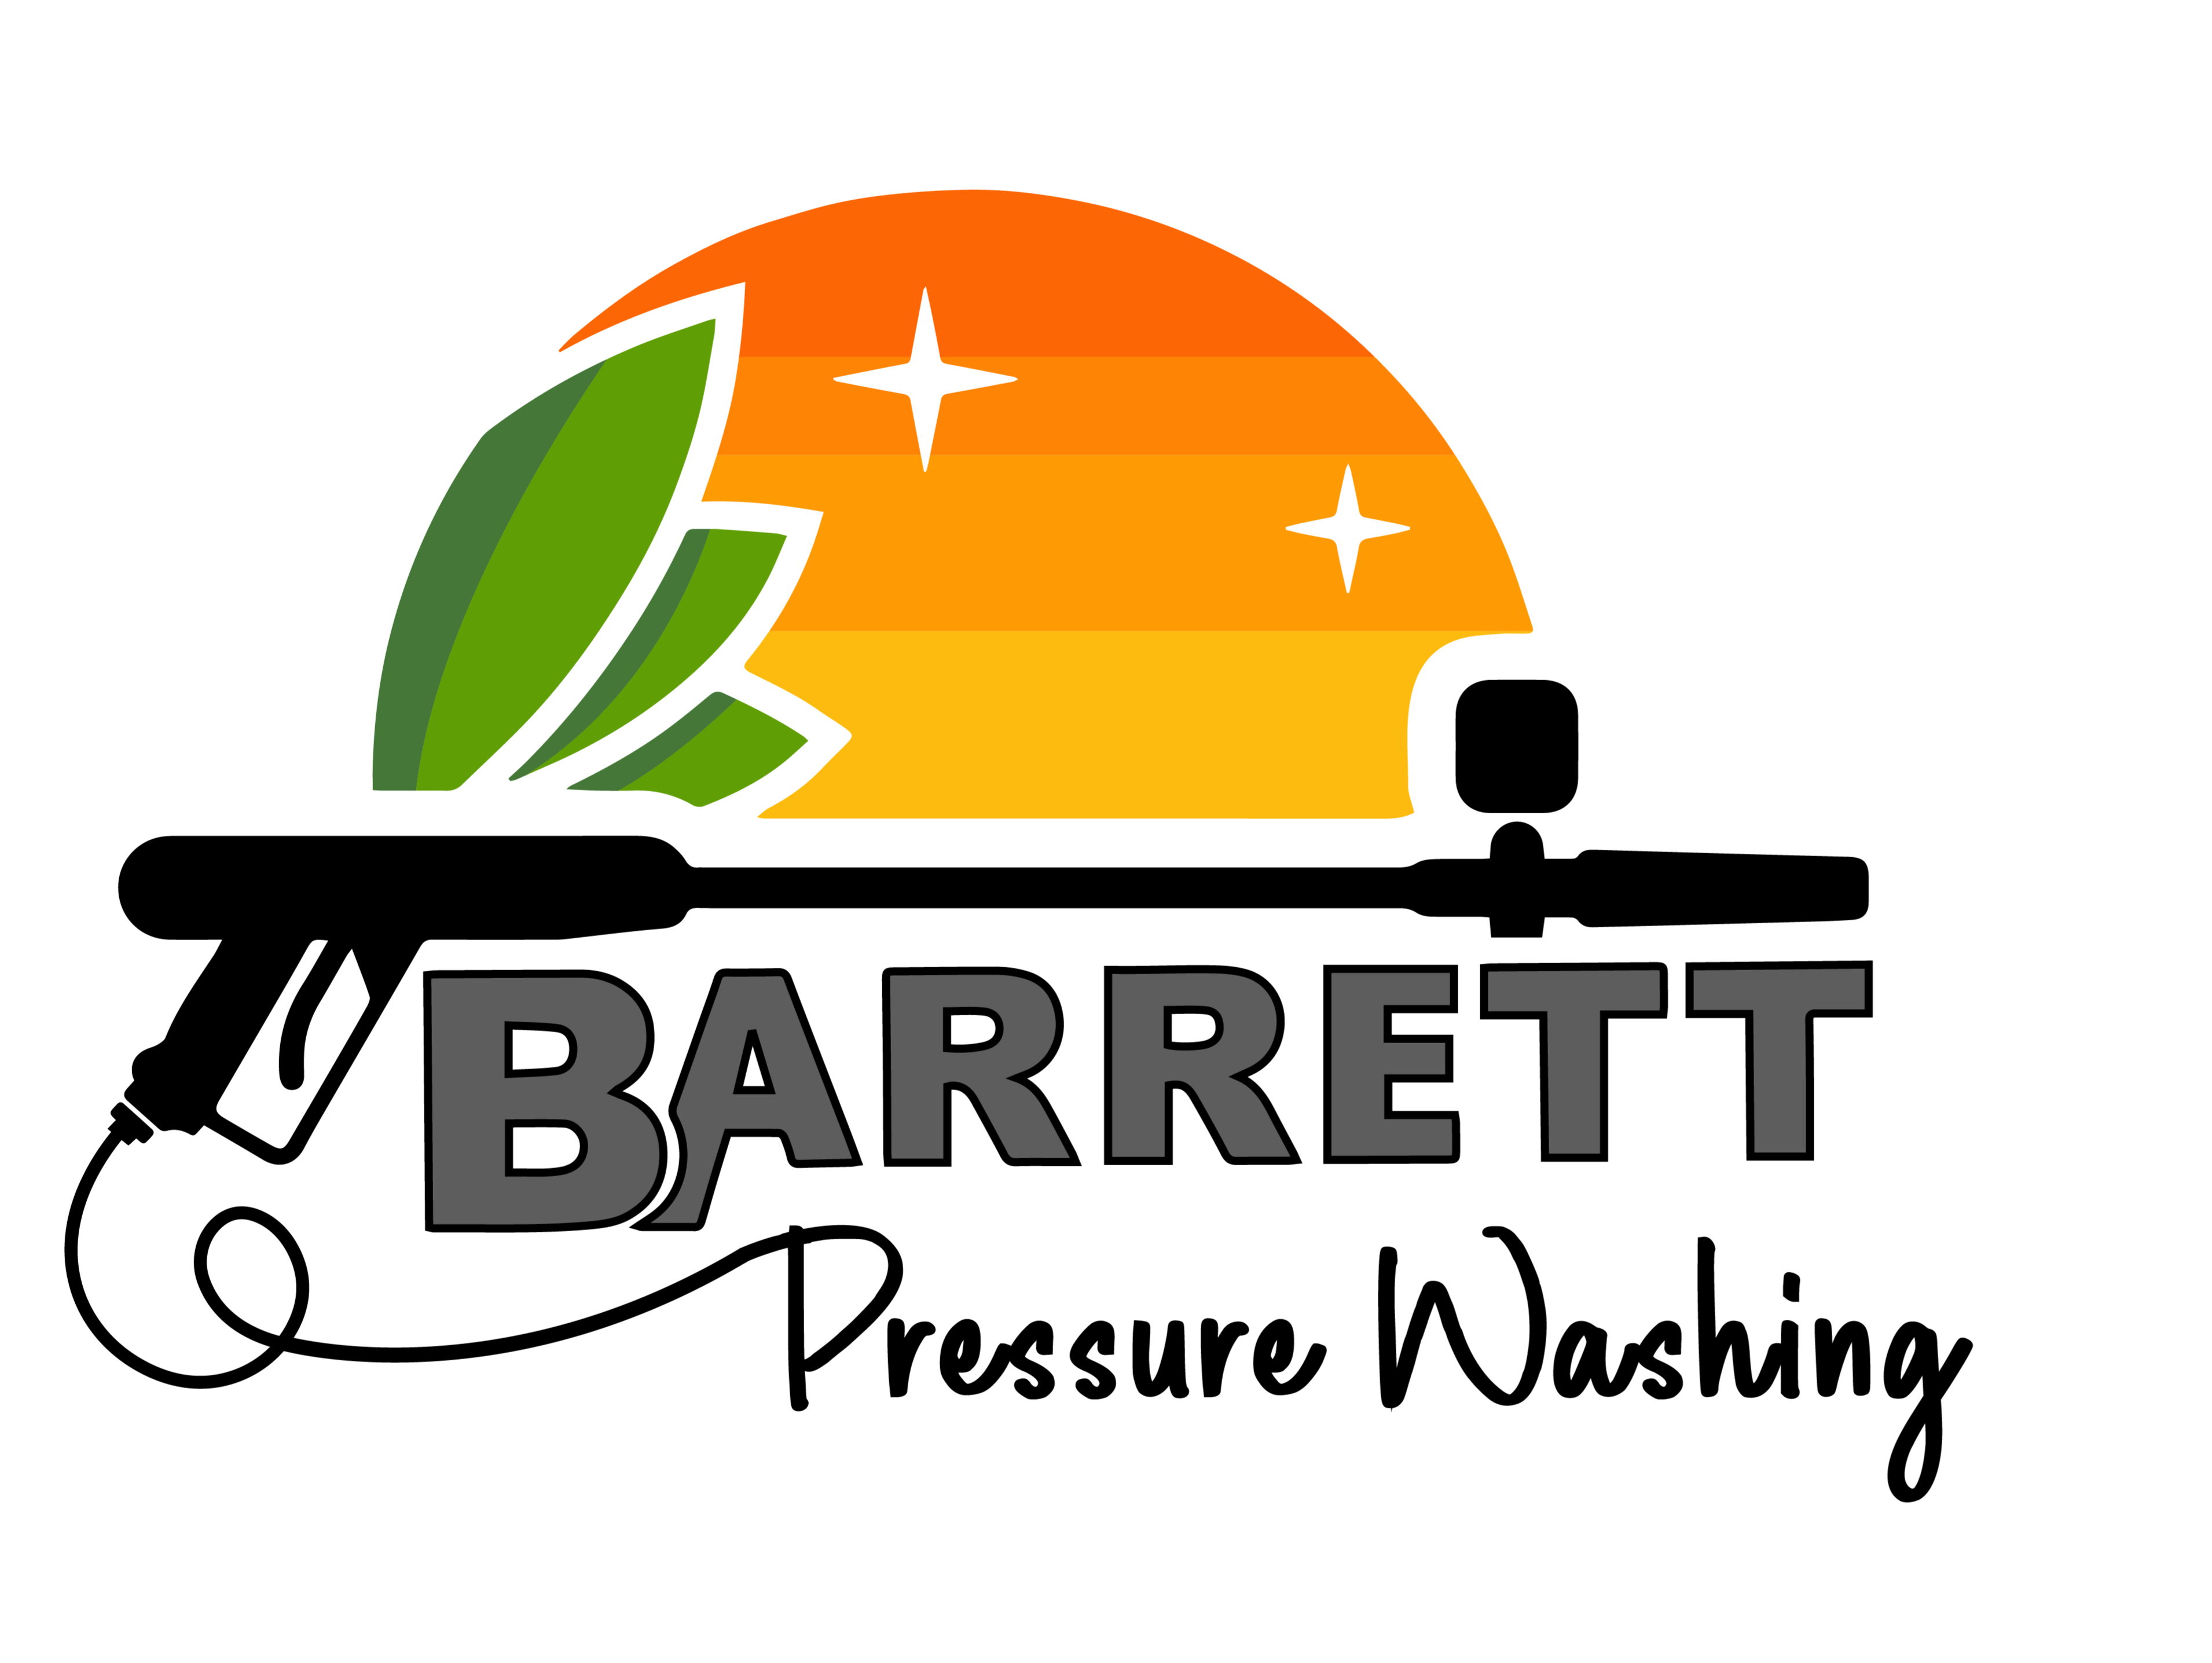 Barrett Pressure Washing – Jay Barrett